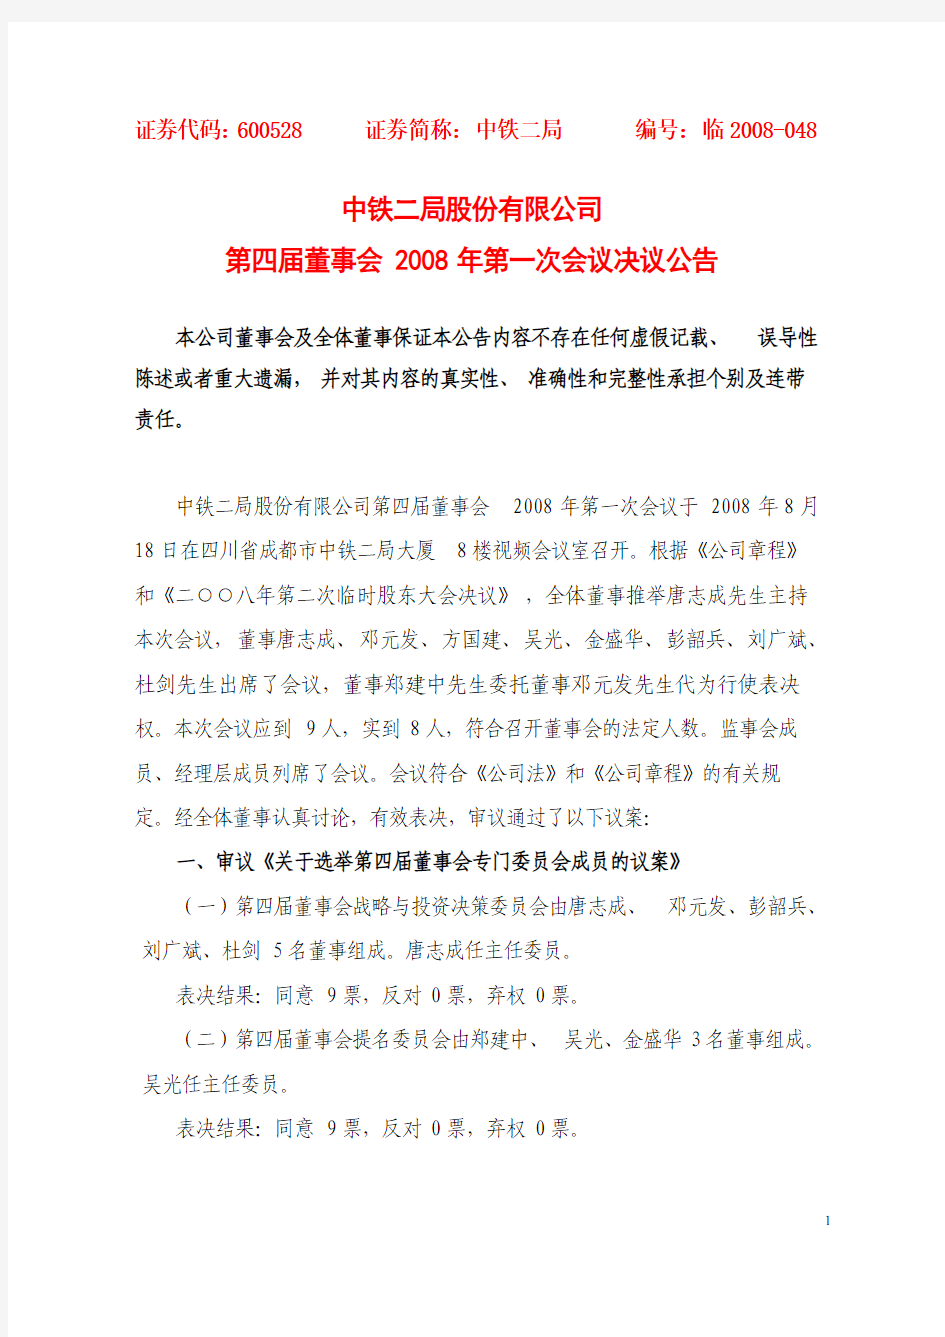 中铁二局股份有限公司第四届董事会2008年第一次会议决议公告